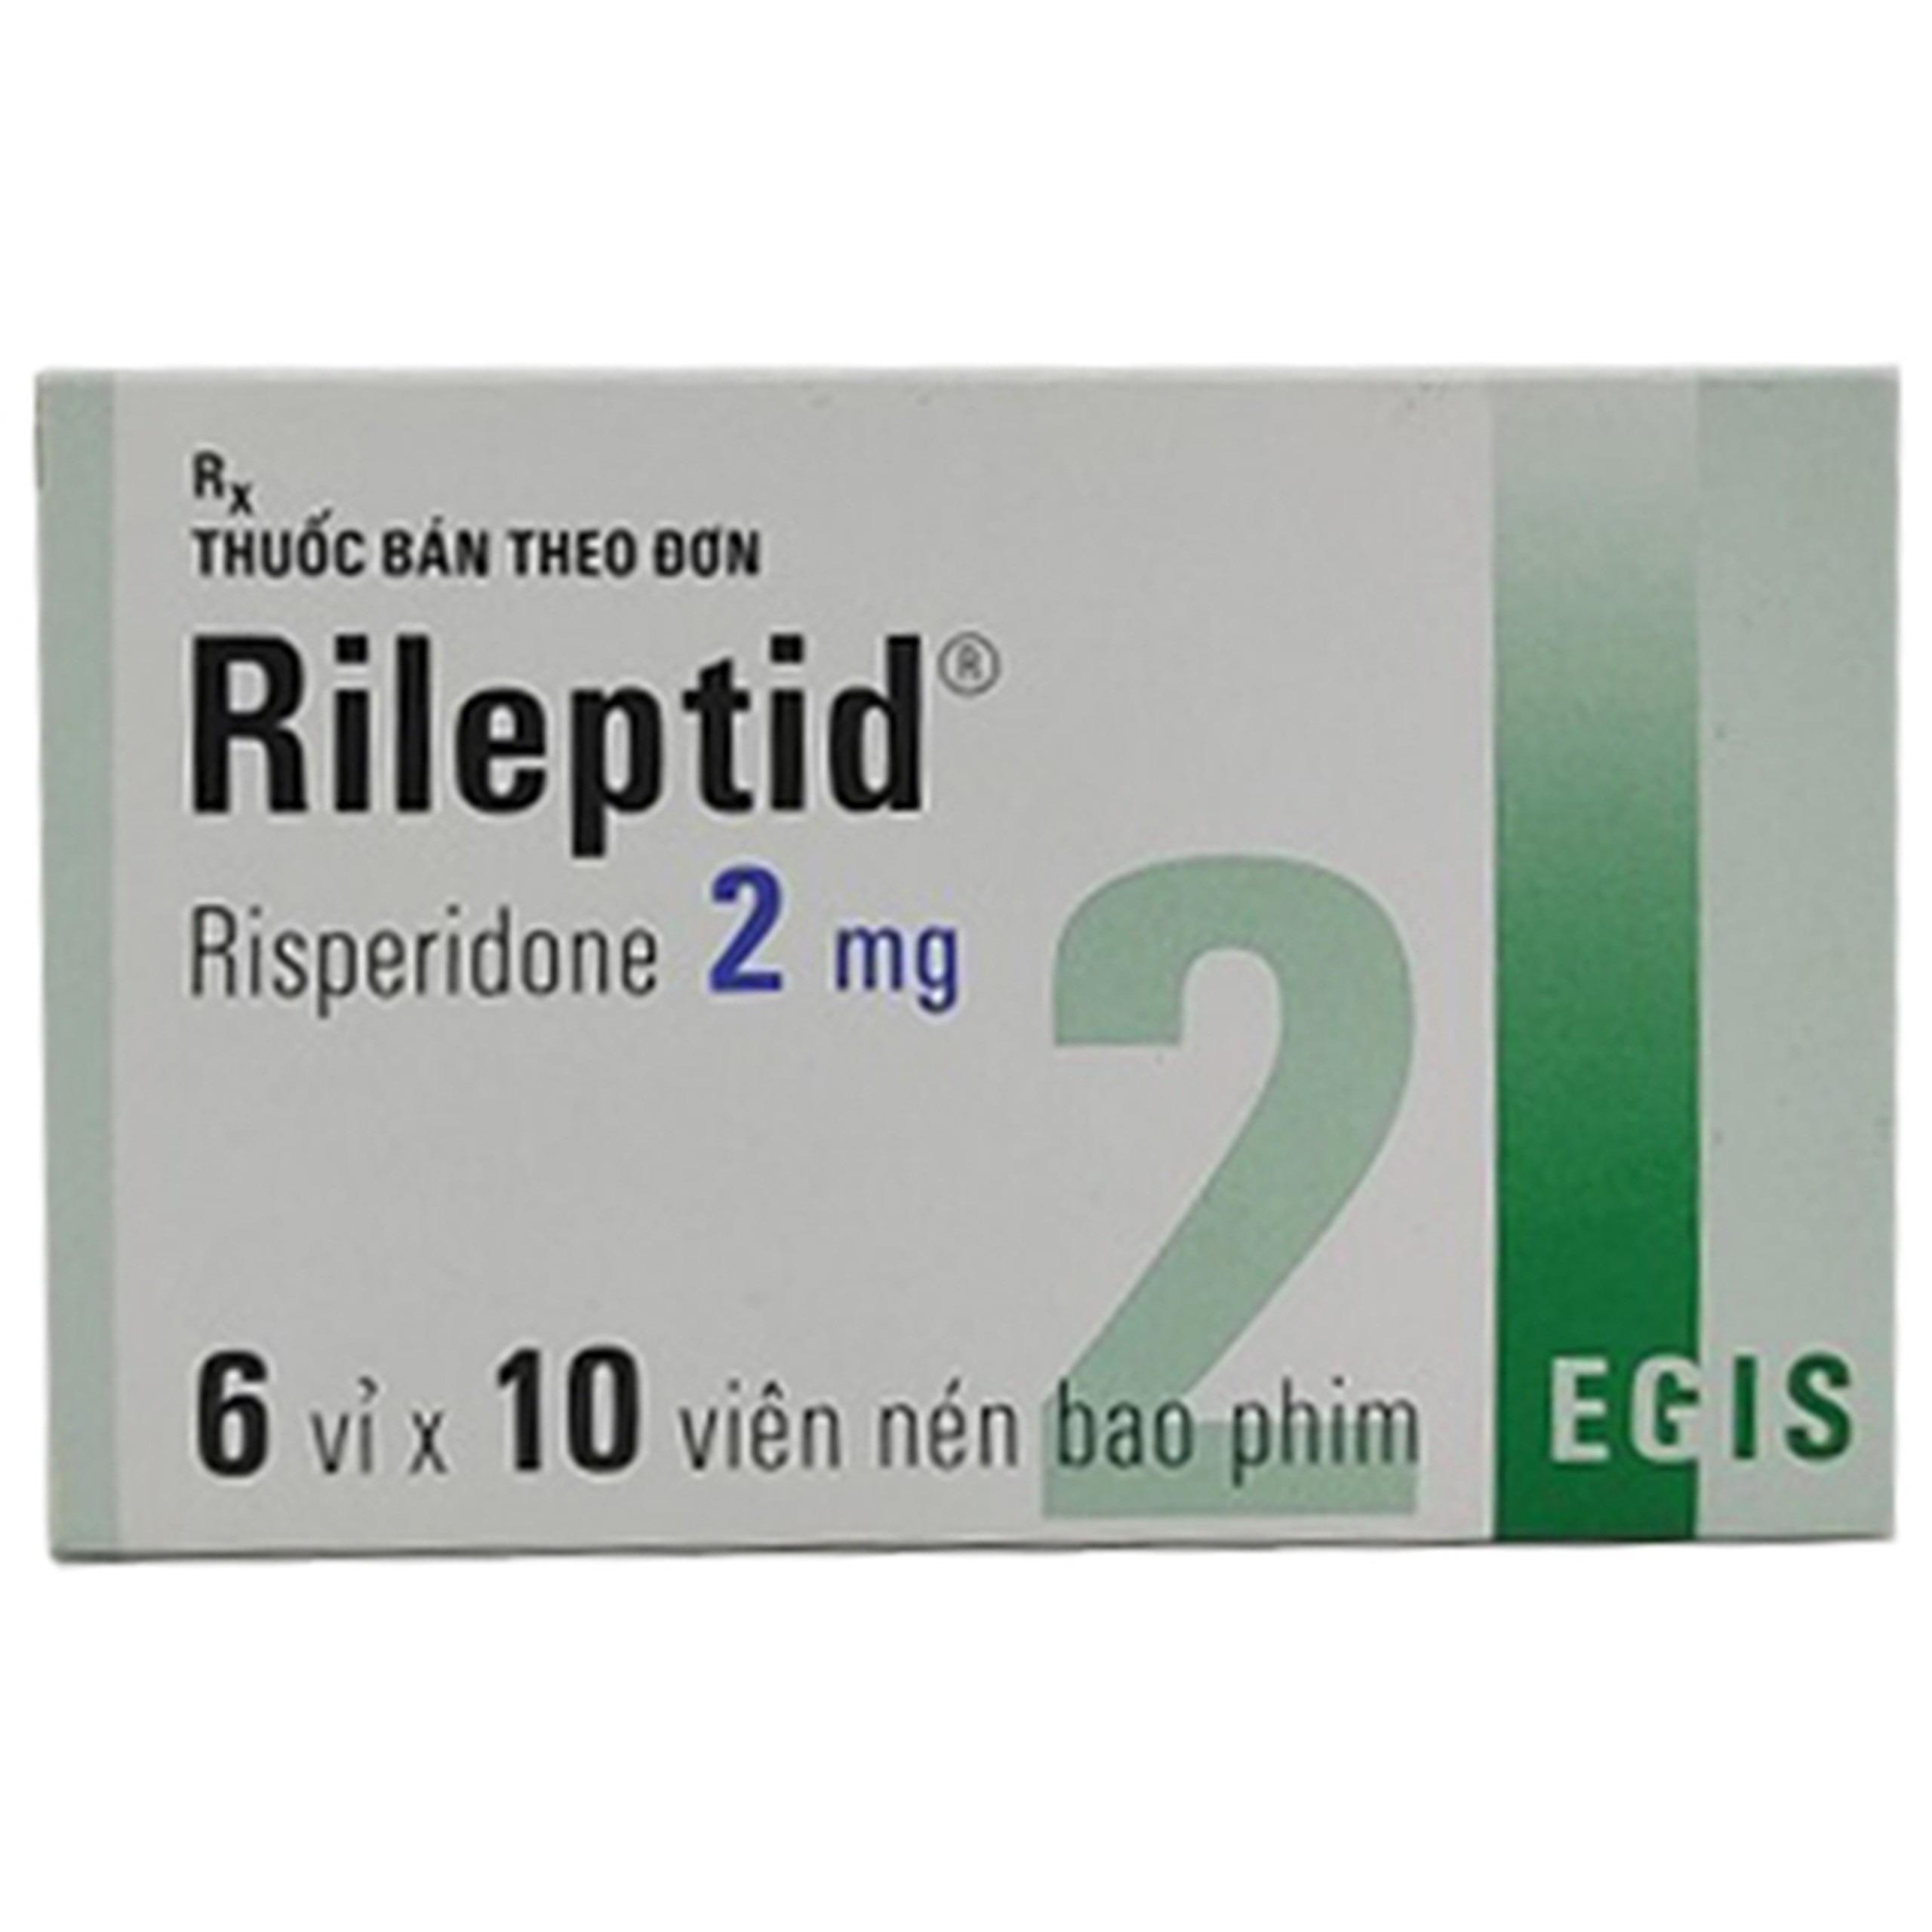 Thuốc Rileptid 2mg Egis Pharma điều trị tâm thần phân liệt cấp và mãn tính (6 vỉ x 10 viên)